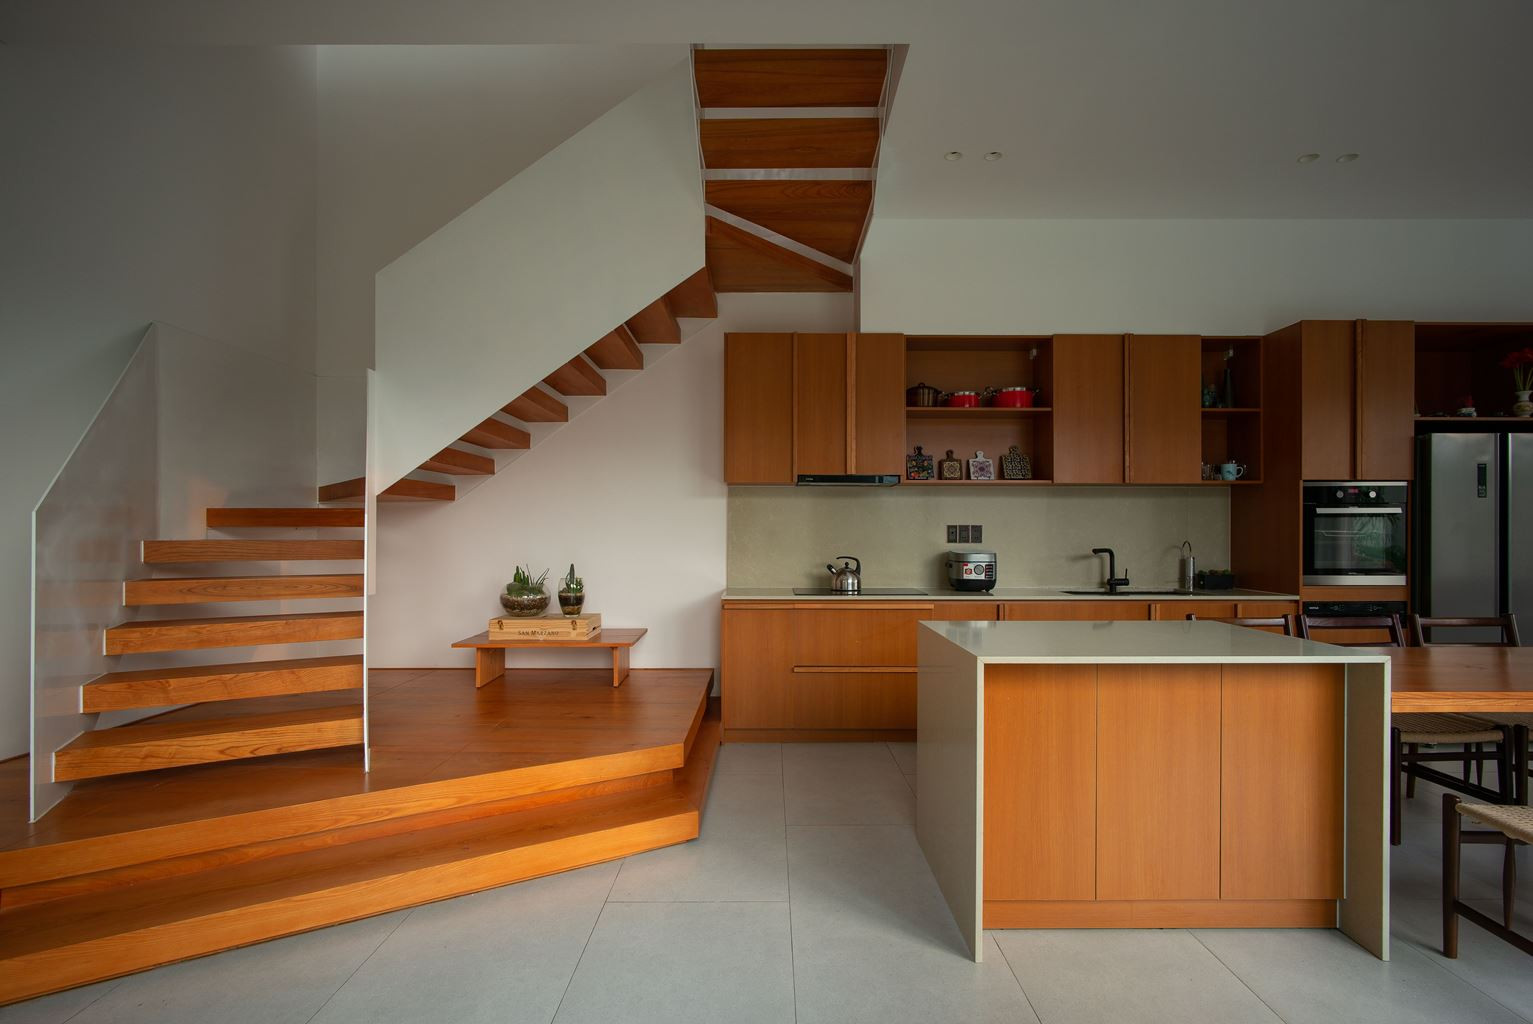 Không gian bếp được tận dụng tối đa các diện tích như gầm cầu thang được kê chiếc bàn nhỏ xinh.